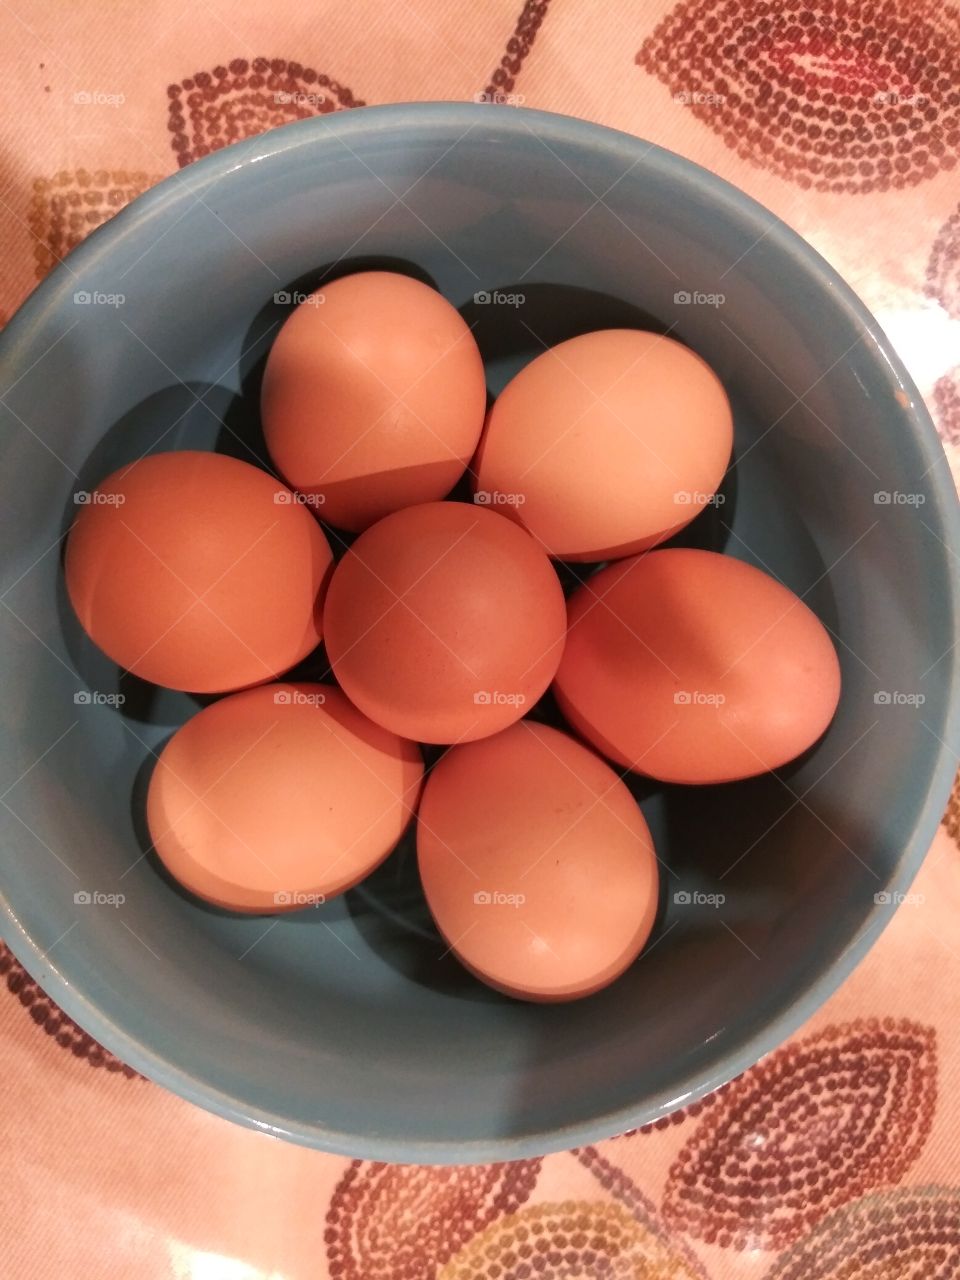 fresh brown eggs from the farm